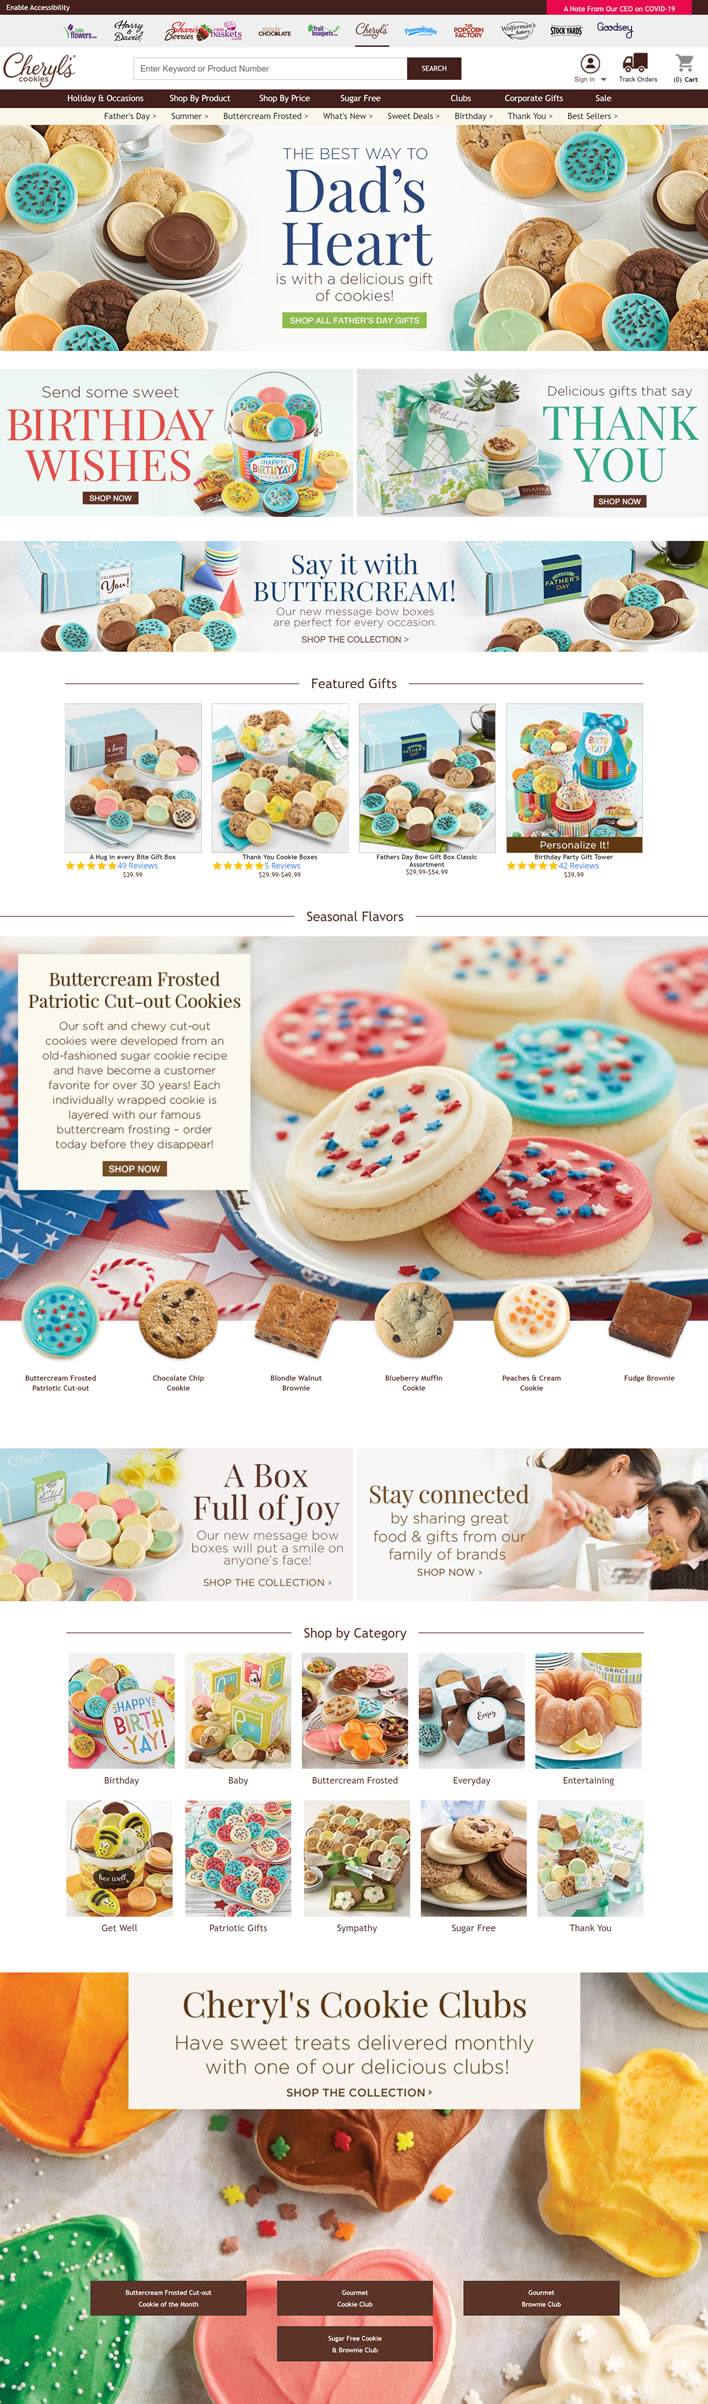 美国饼干礼物和美食甜点购买网站：Cheryl’s